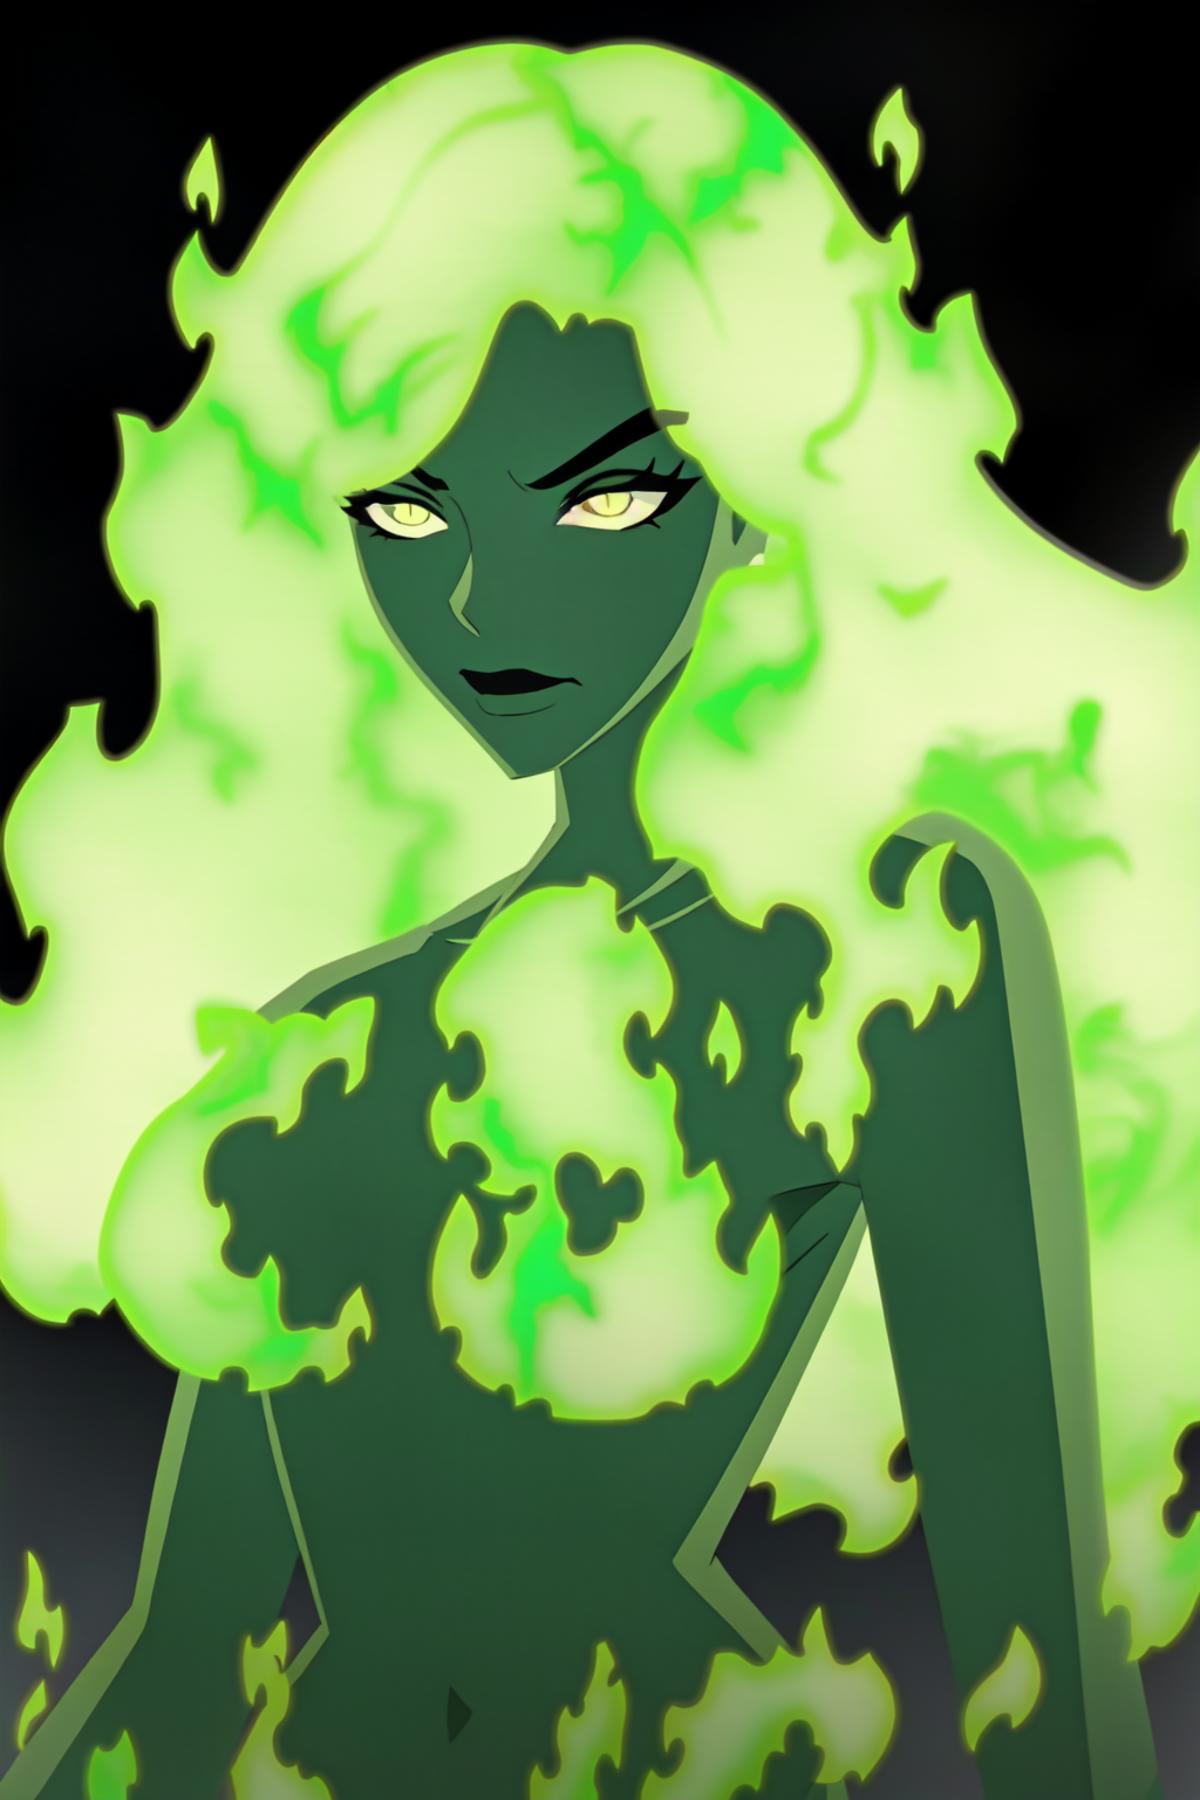 Fire Lit (DC Comics) image by misspixel